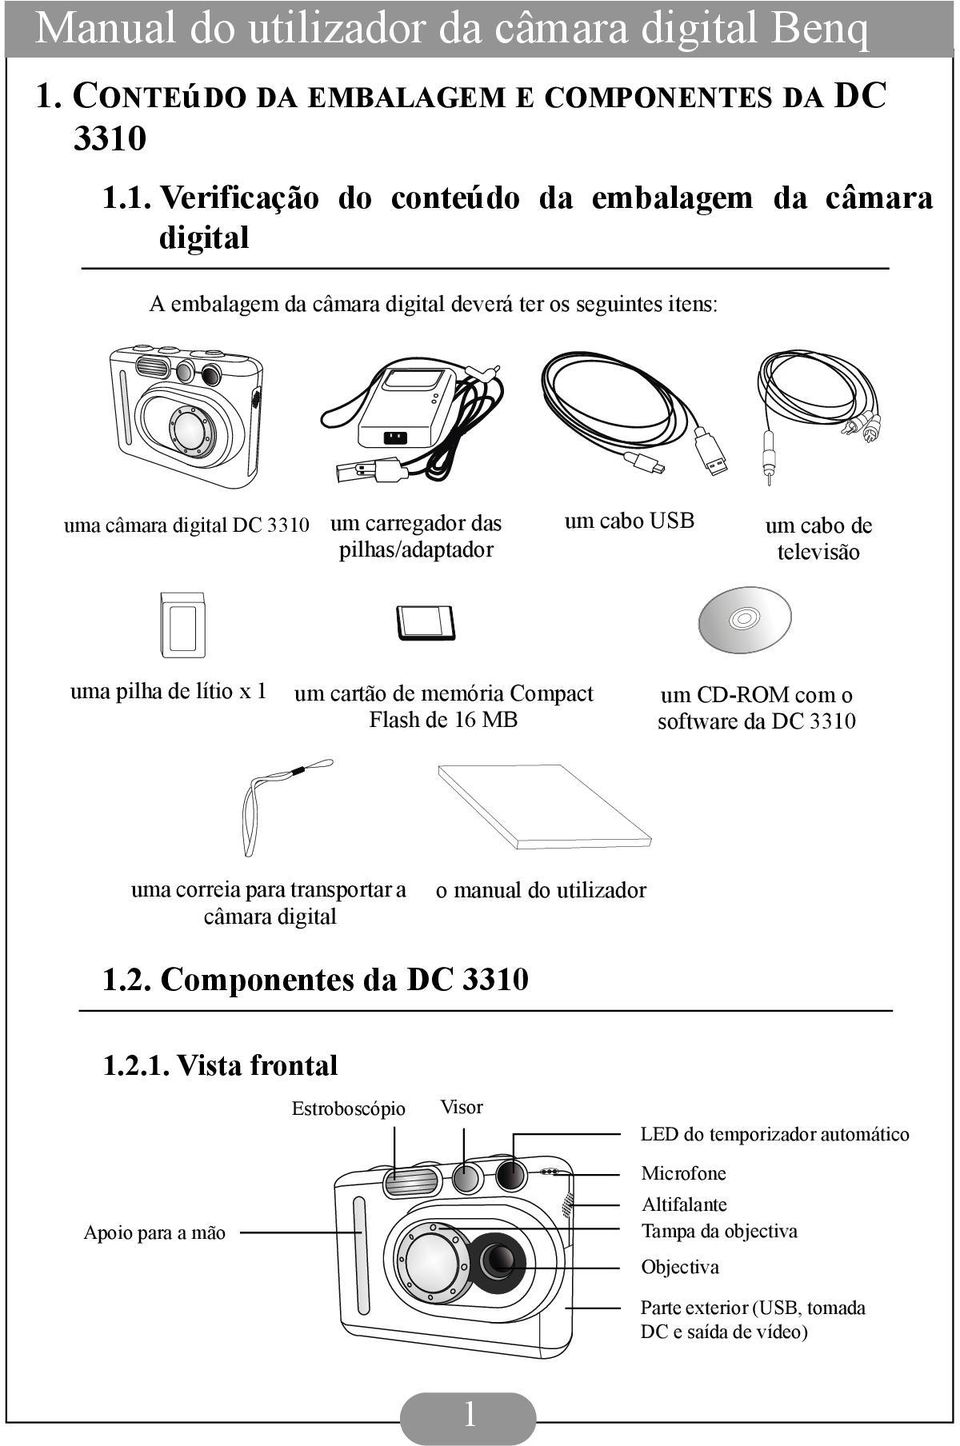 16 MB um CD-ROM com o software da DC 3310 uma correia para transportar a câmara digital o manual do utilizador 1.2. Componentes da DC 3310 1.2.1. Vista frontal